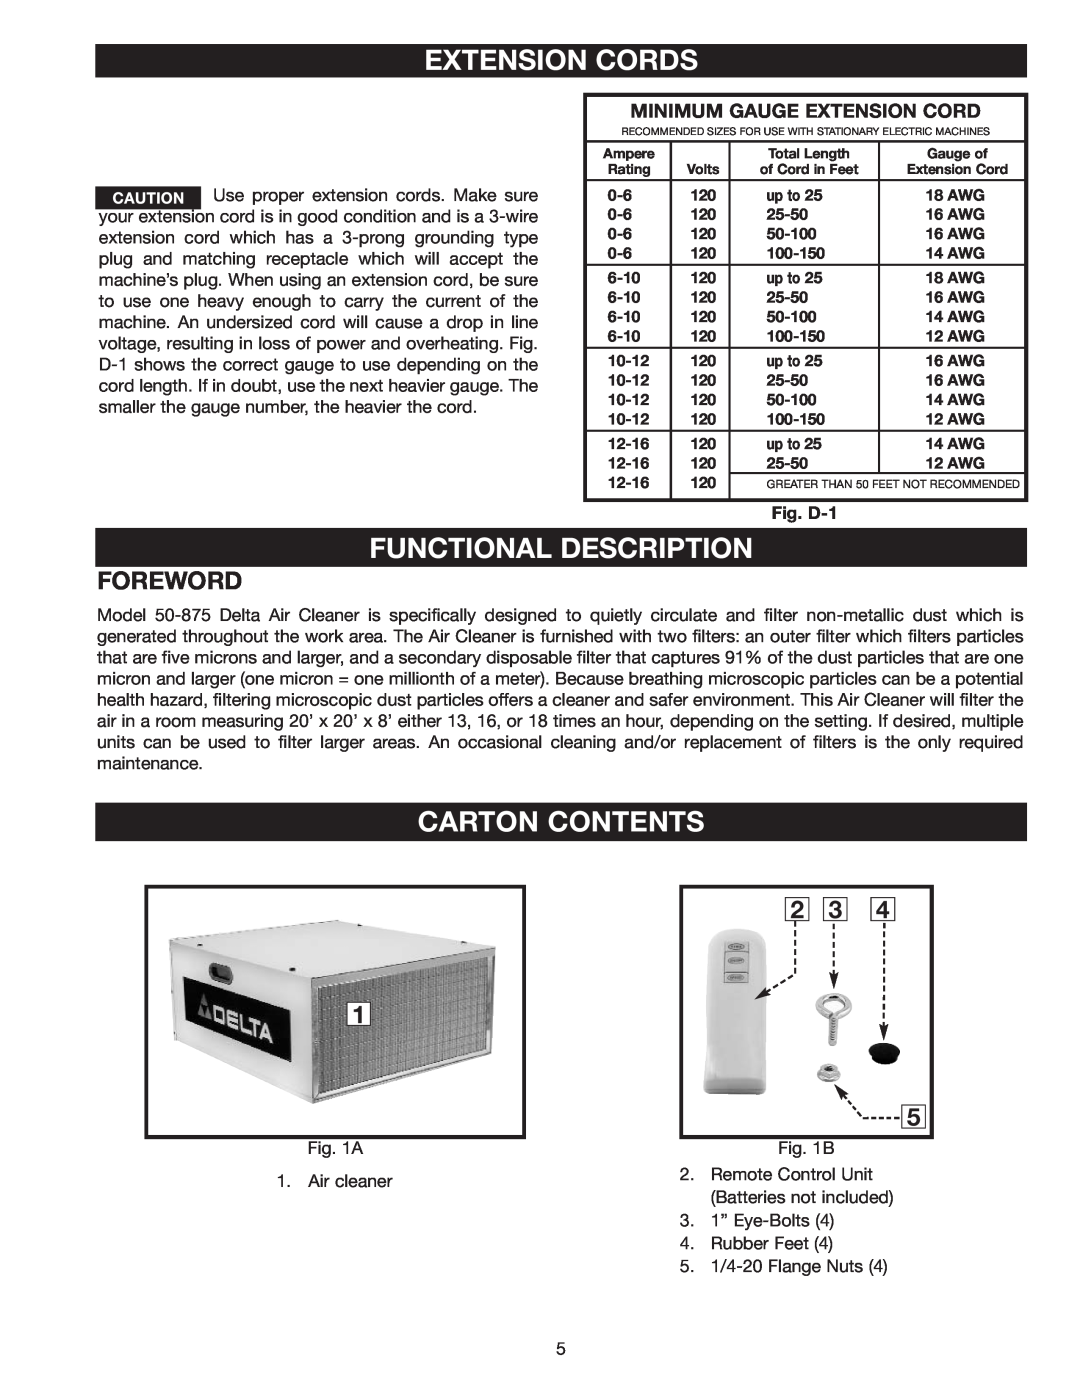 Delta 50-875 Foreword, Extension Cords, Functional Description, Carton Contents, Minimum Gauge Extension Cord 